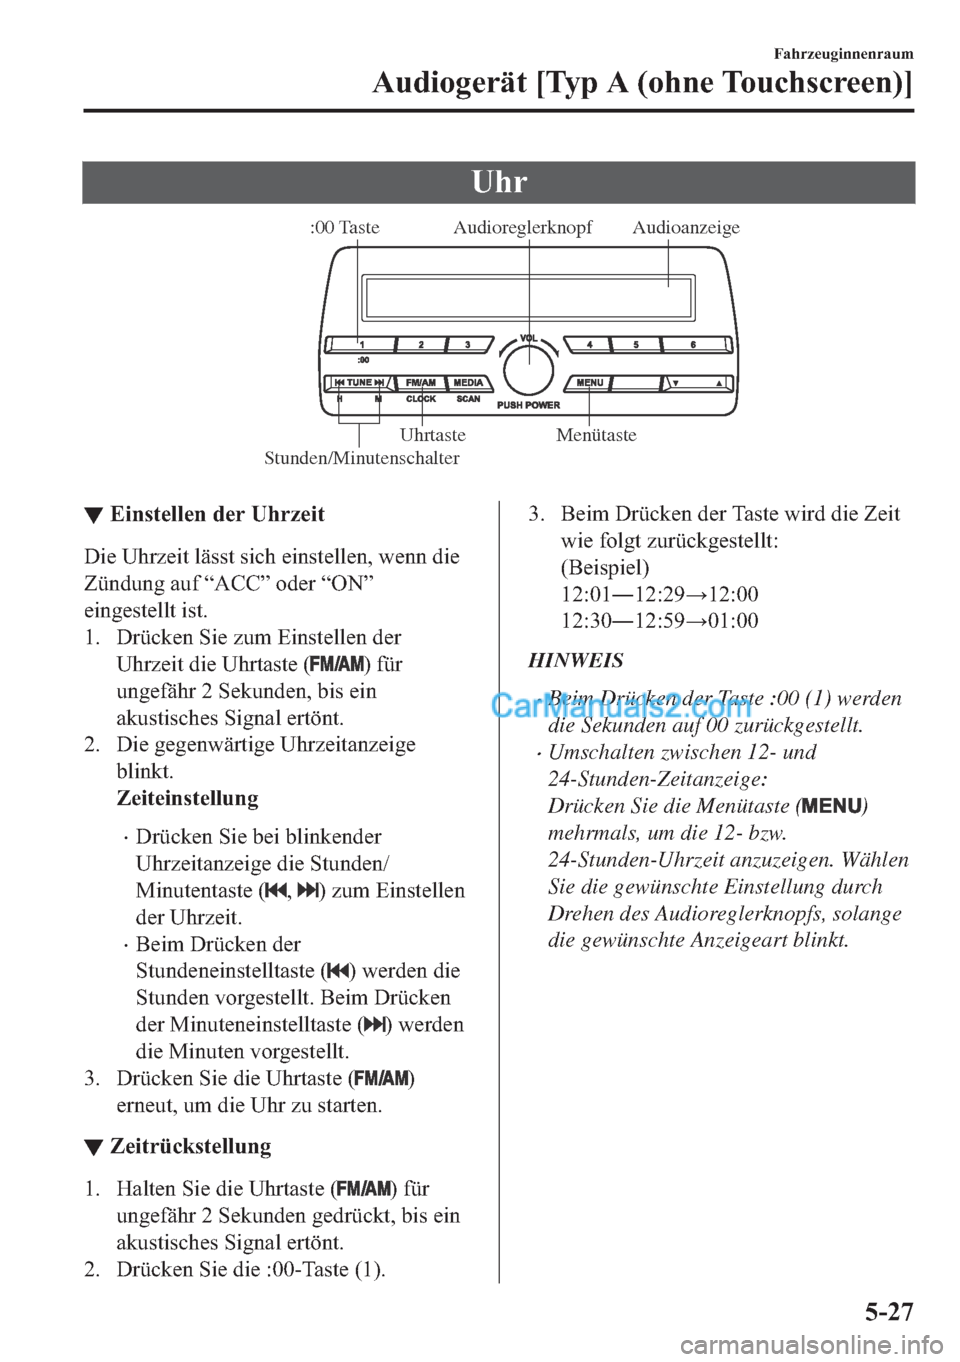 MAZDA MODEL 2 2018  Betriebsanleitung (in German) �8�K�U
Audioanzeige Audioreglerknopf
Stunden/Minutenschalter:00 Taste
Menütaste Uhrtaste
▼▼�(�L�Q�V�W�H�O�O�H�Q��G�H�U��8�K�U�]�H�L�W
��L�H��8�K�U�]�H�L�W��O�l�V�V�W��V�L�F�K��H�L�Q�V�W�H�